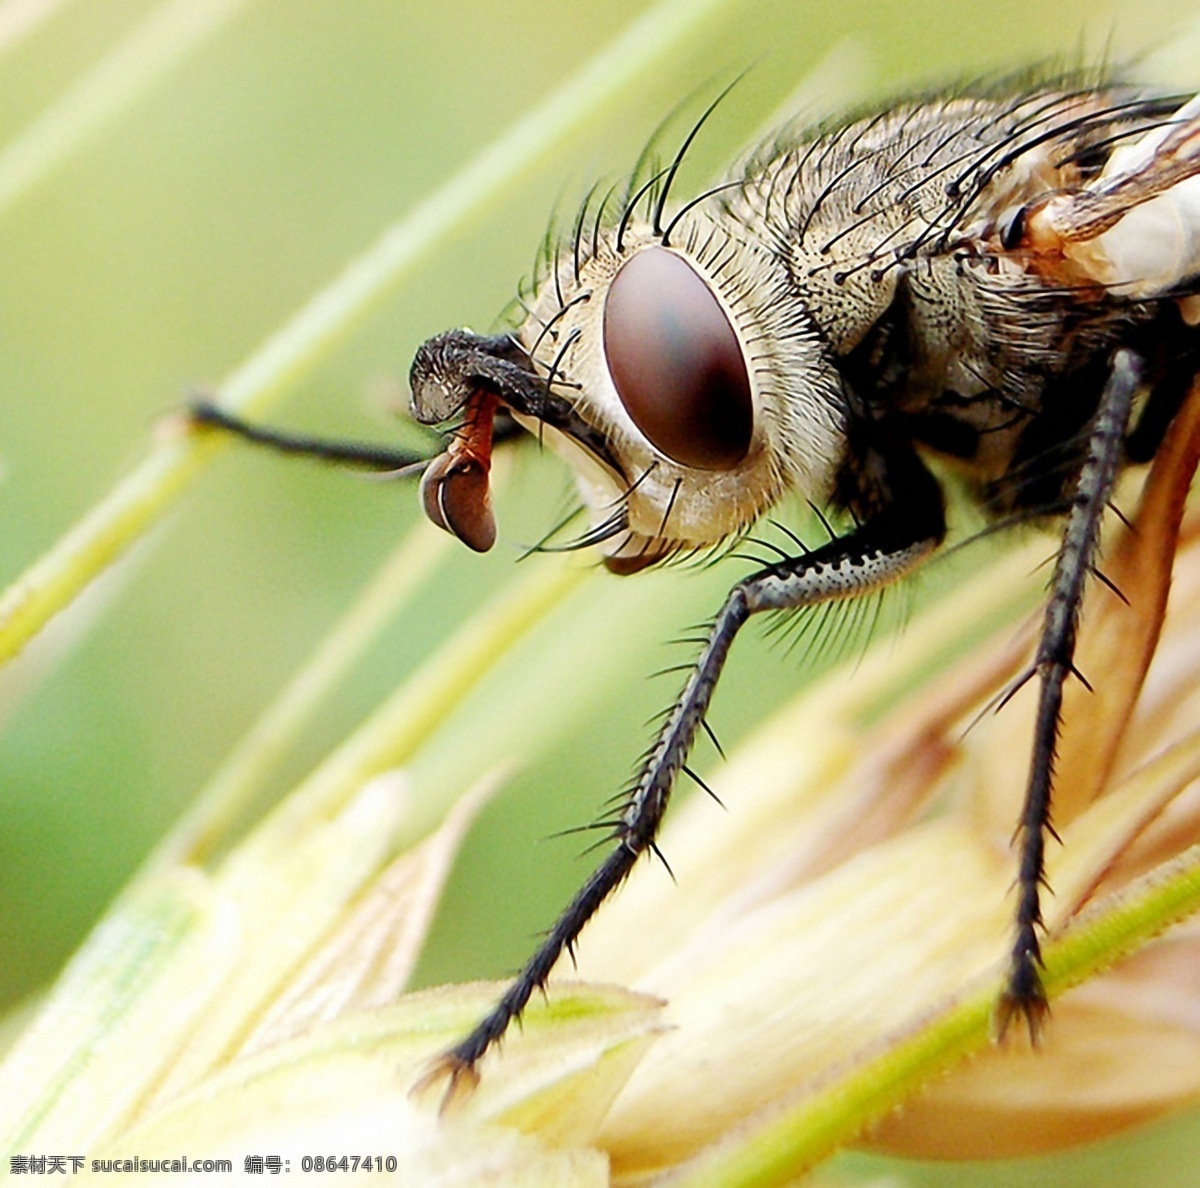 苍蝇 特写 昆虫 摄影图库 生物世界 苍蝇特写